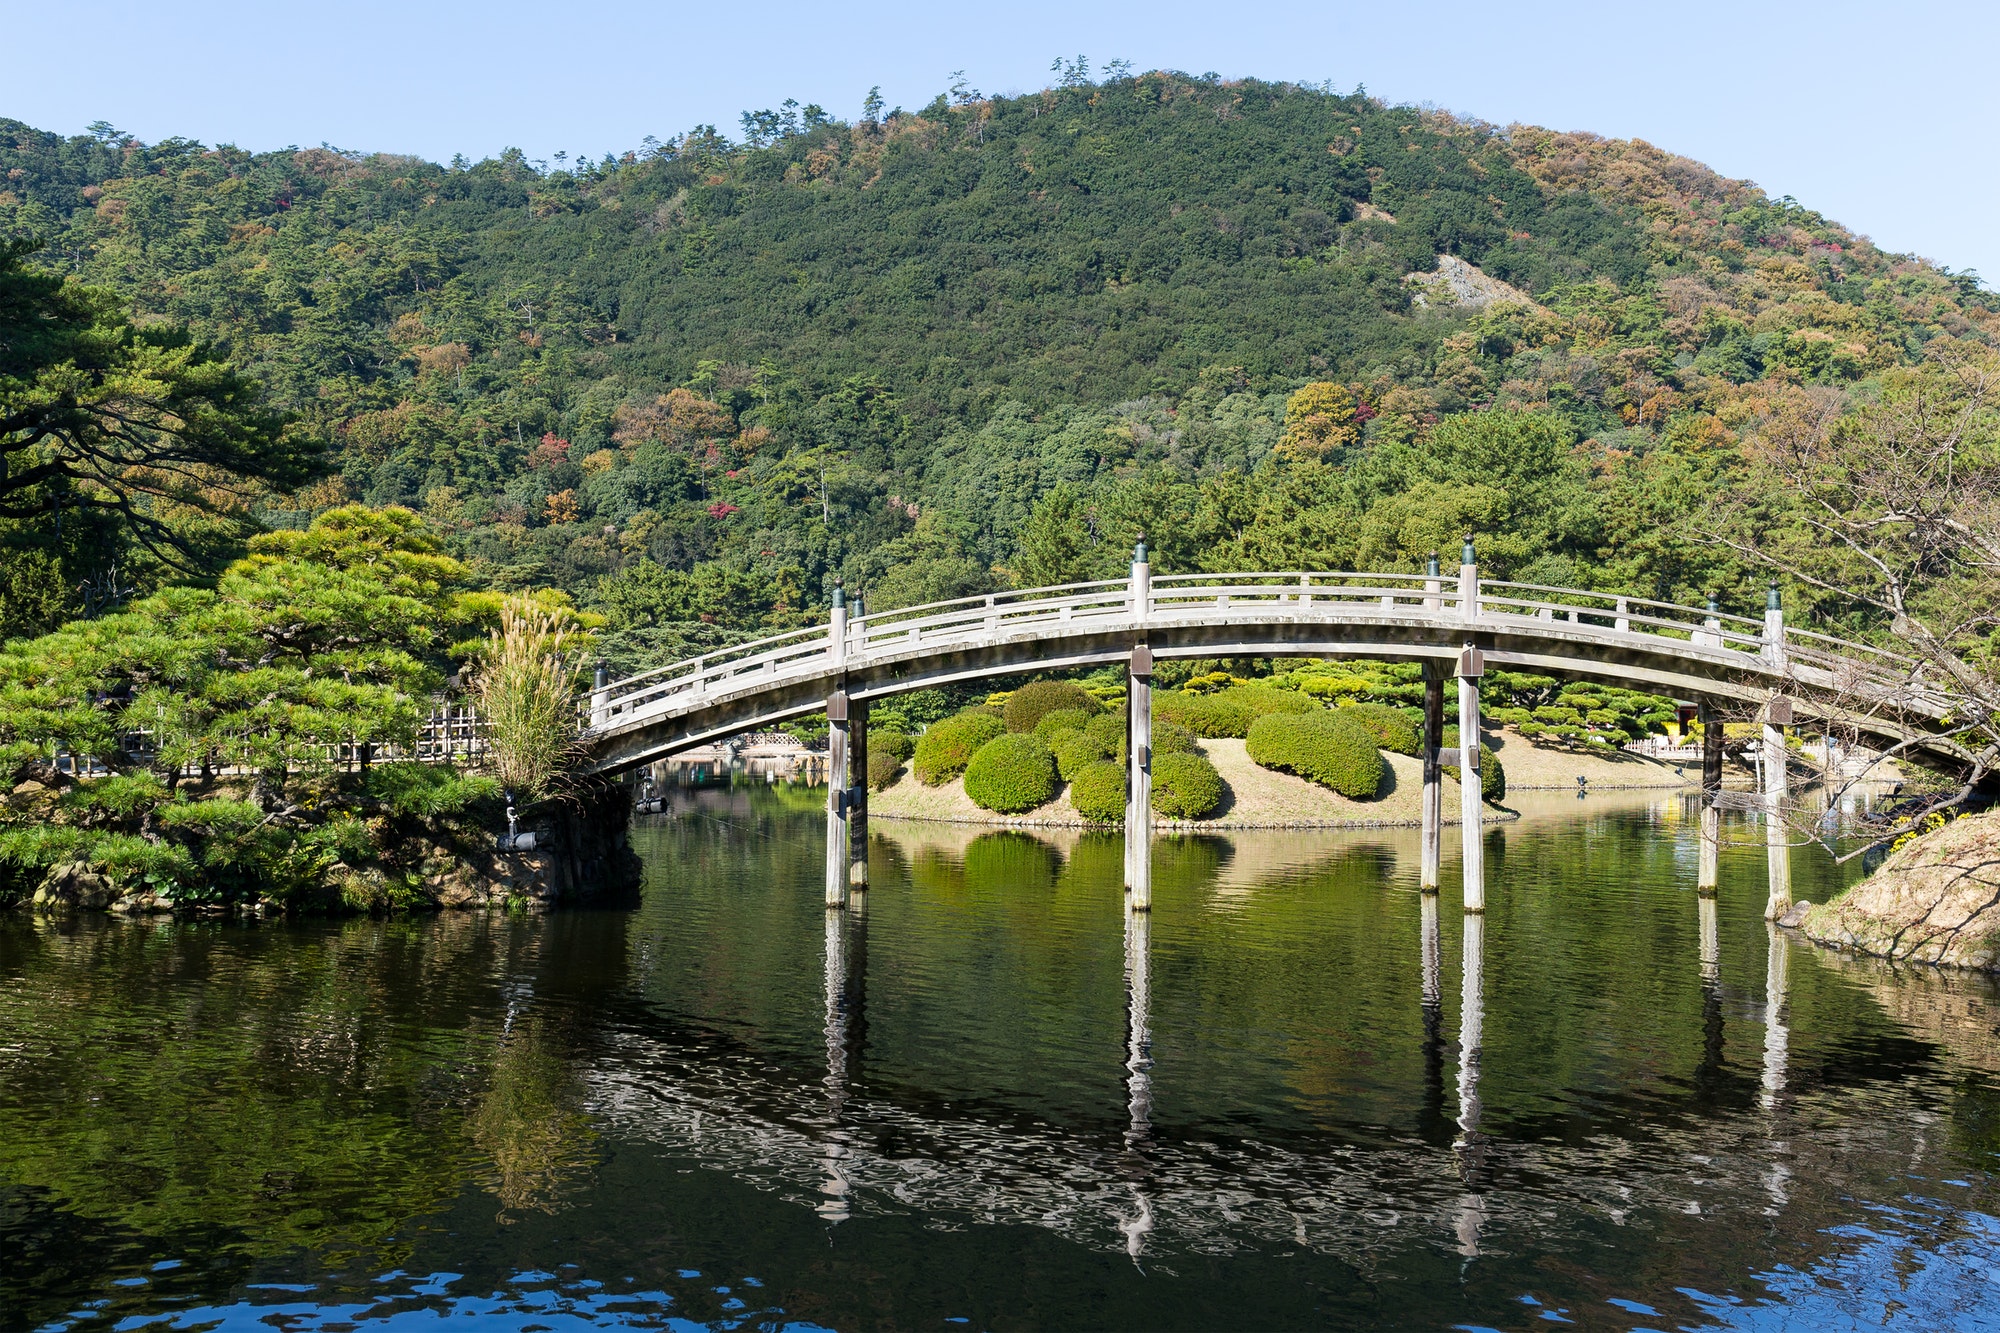 Ritsurin Garden in Takamatsu